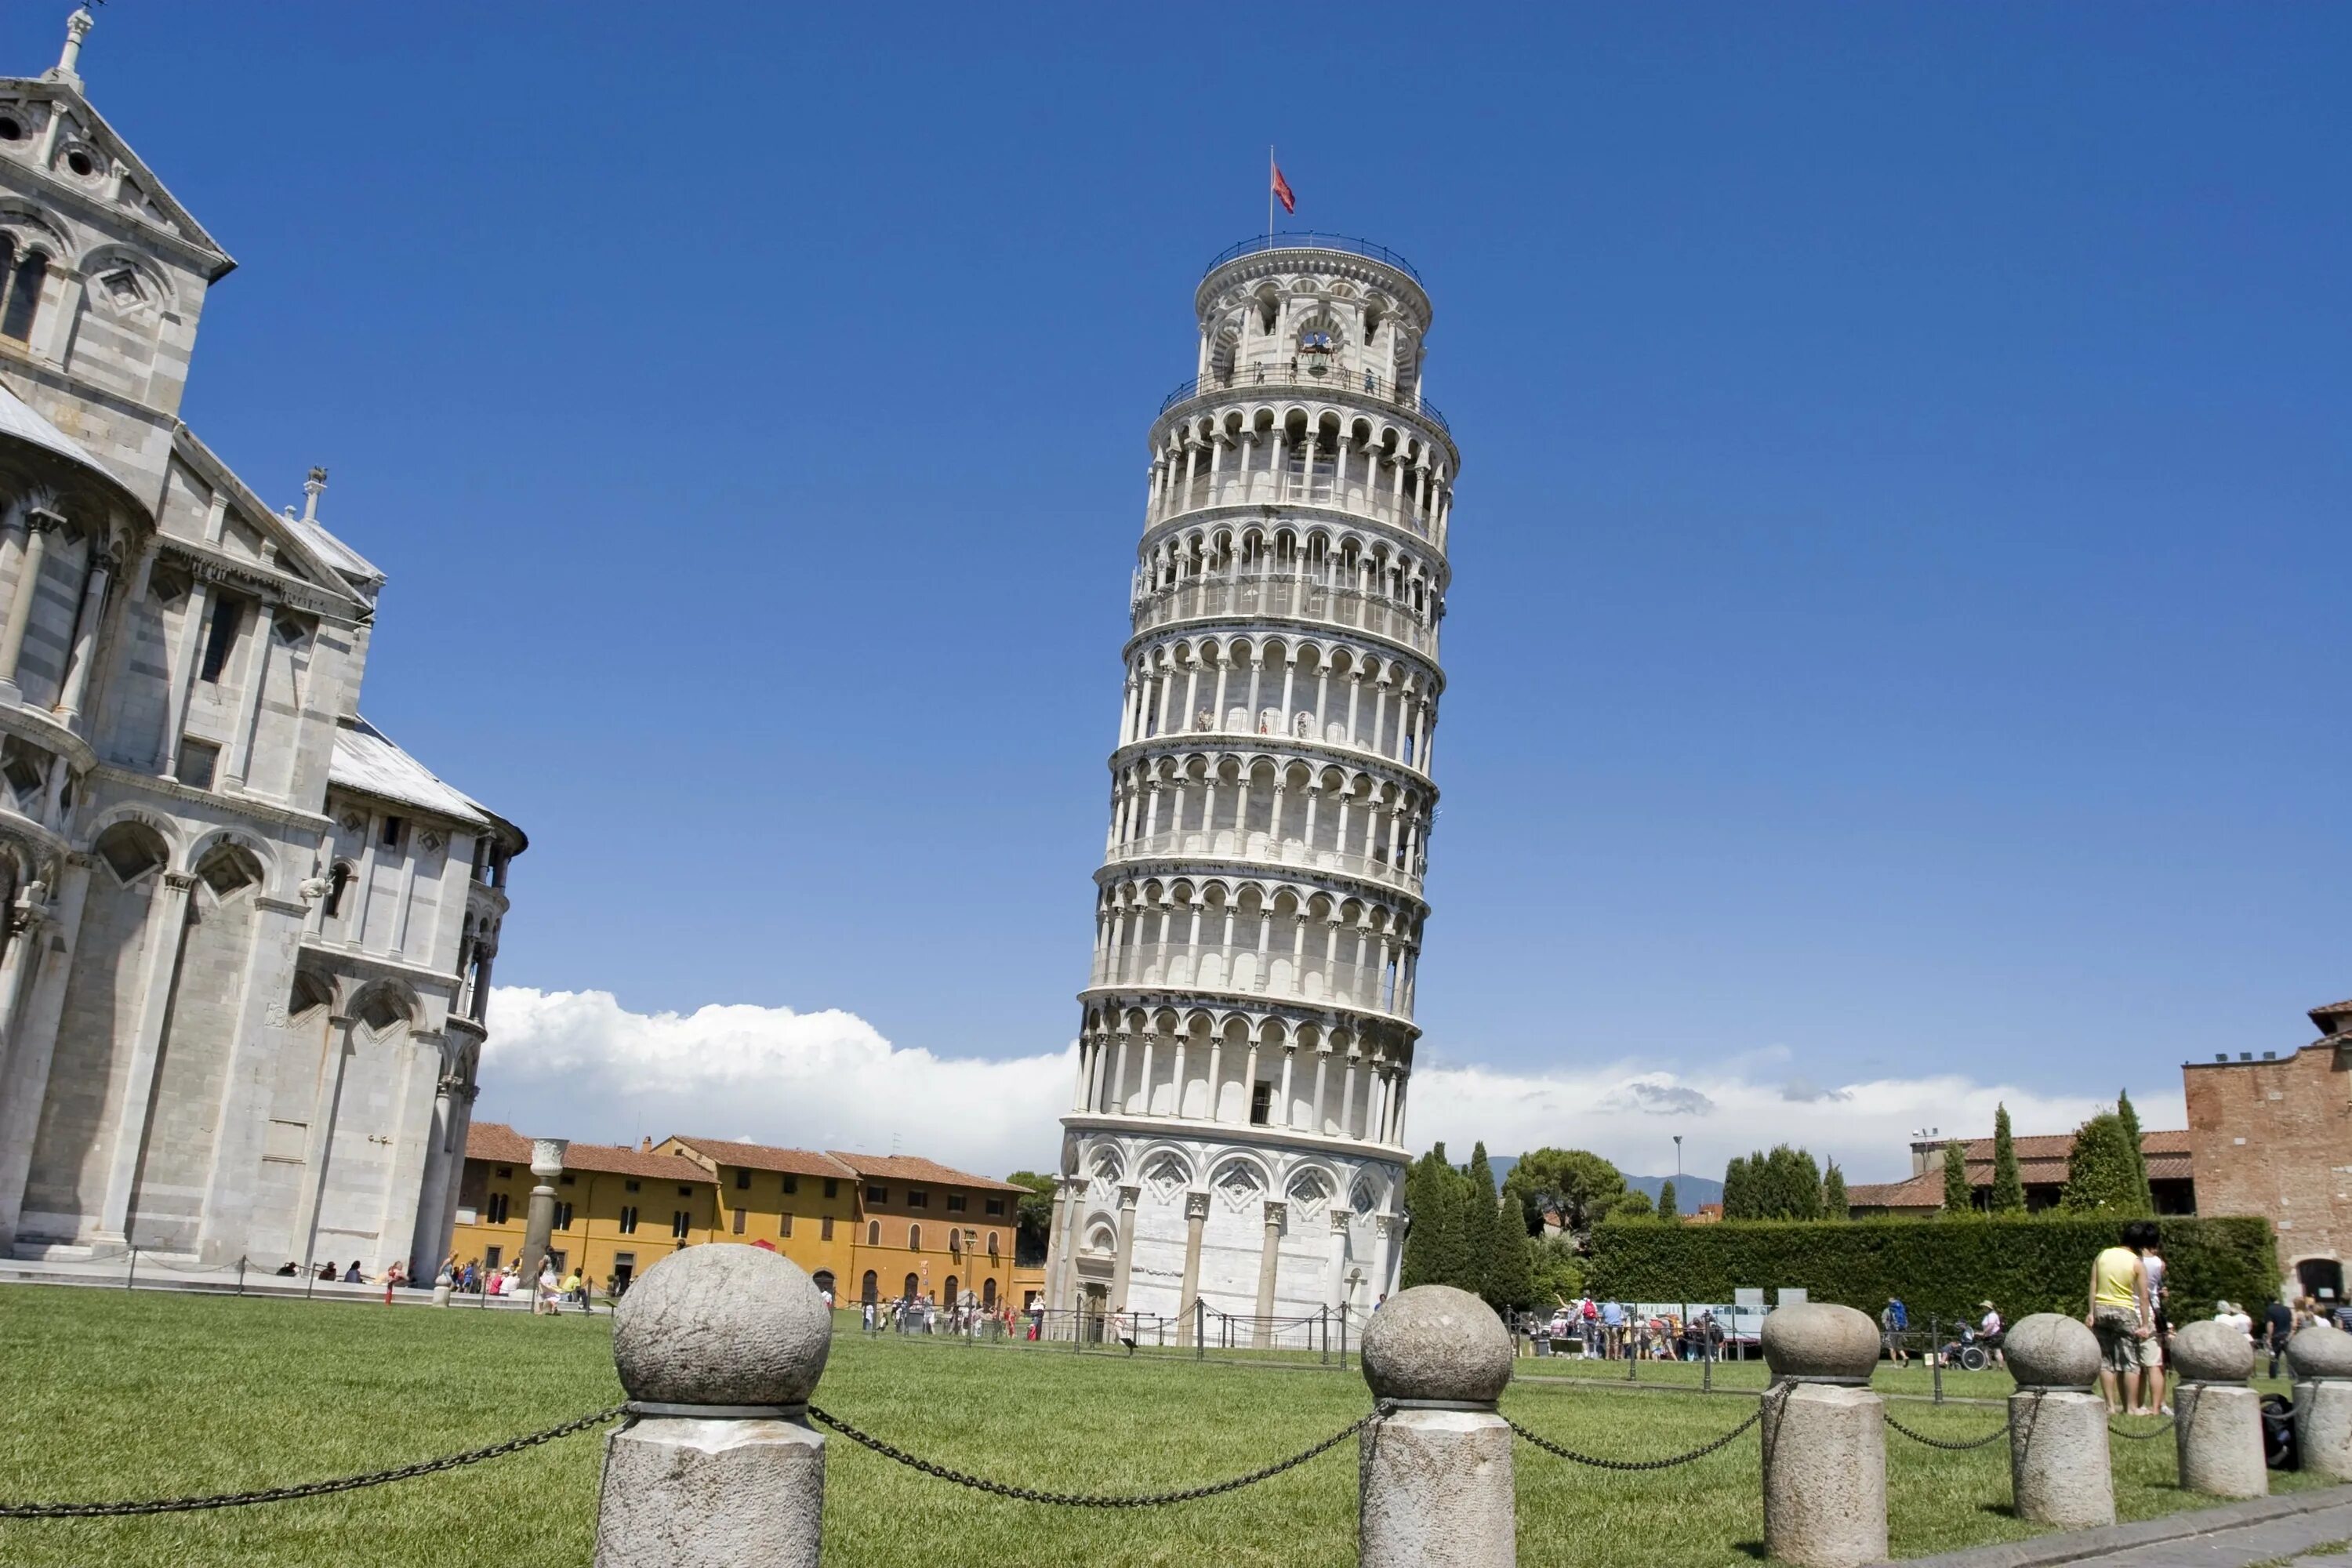 Пизанская башня Италия. 10. Пизанская башня (Пиза, Италия). Падающая башня в Италии. Пизанская башня (Torre pendente di Pisa). Башня